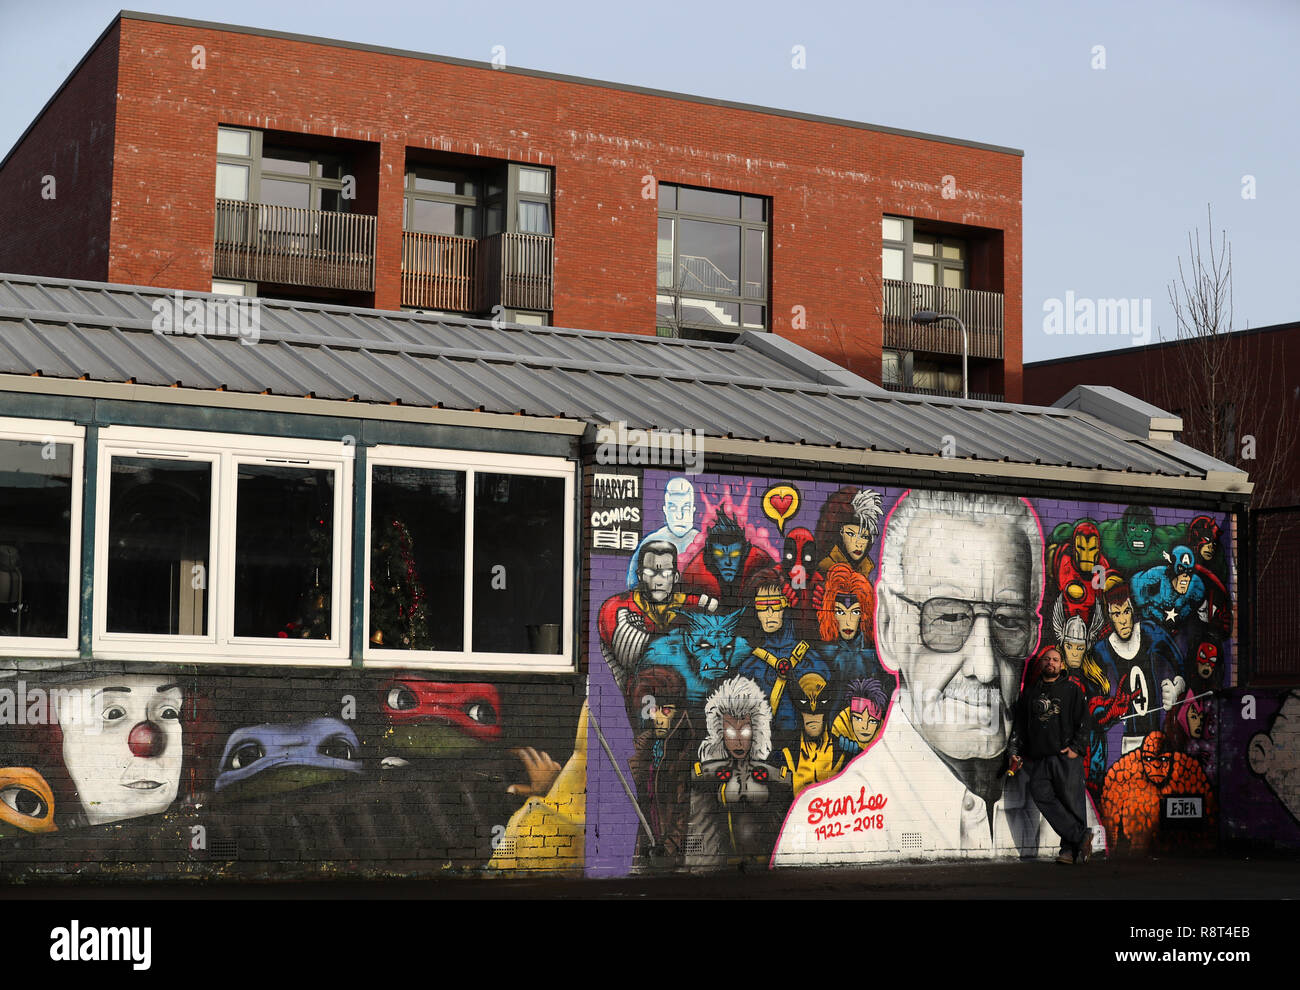 Artiste Danny McDermott, connu comme EJEK, avec sa peinture murale a récemment terminé de Marvel Comics co-créateur Stan Lee aux côtés de 22 super héros à la Grange youth centre de Glasgow qui est géré par le Carrefour Jeunesse et de l'Association. Lee est mort en novembre à l'âge de 95 ans. Banque D'Images